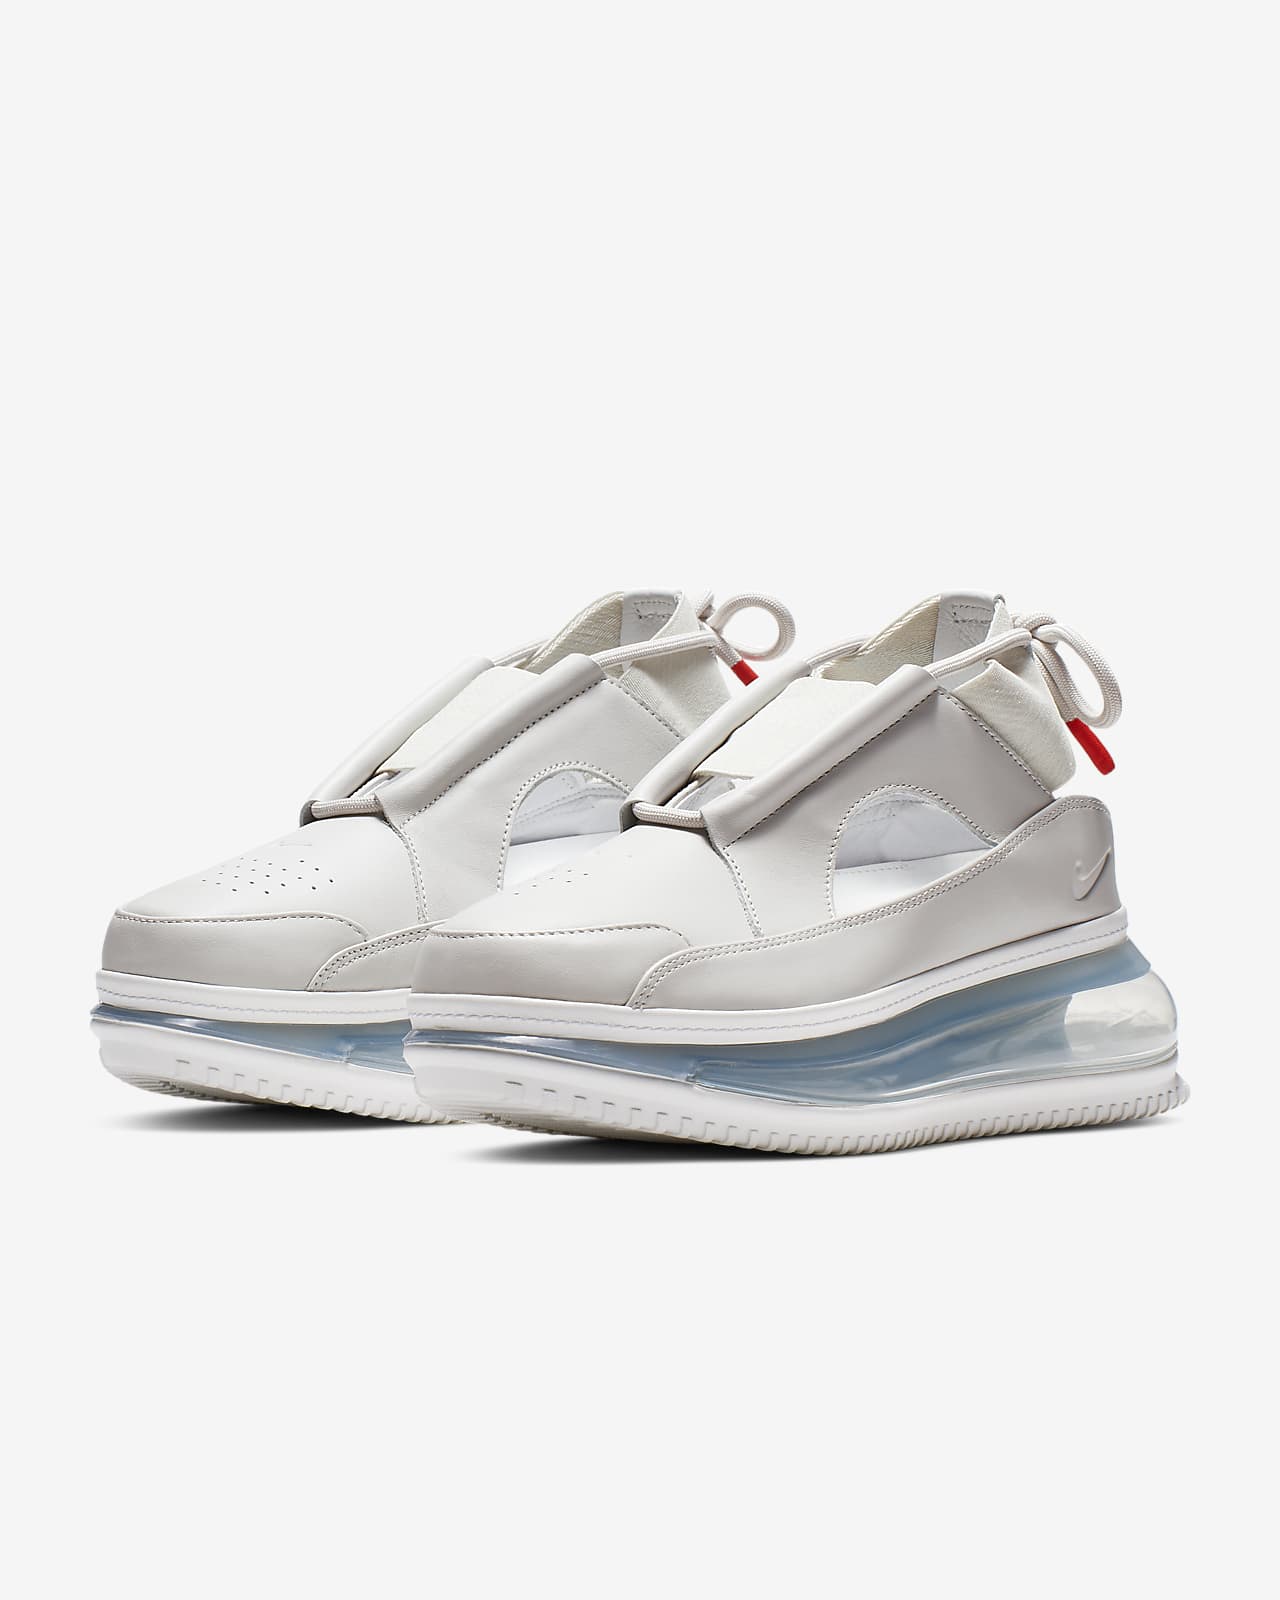 Nike Air Max FF 720 女鞋